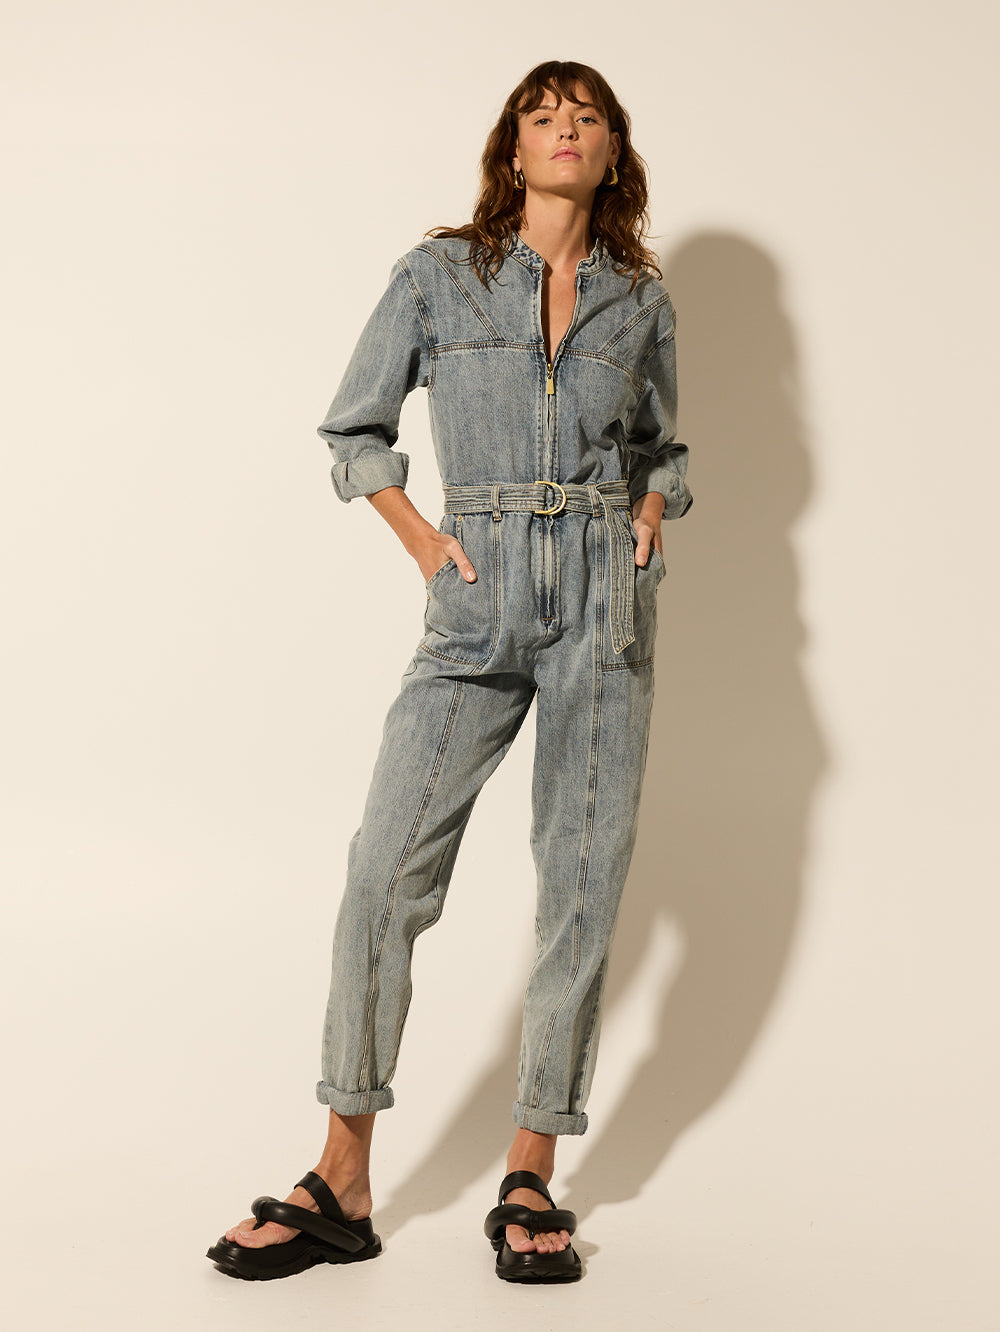 Soft Denim Overalls, Light Blue Jumpsuit With Pocket , Adjust Belt Pants  for Women - Etsy Australia